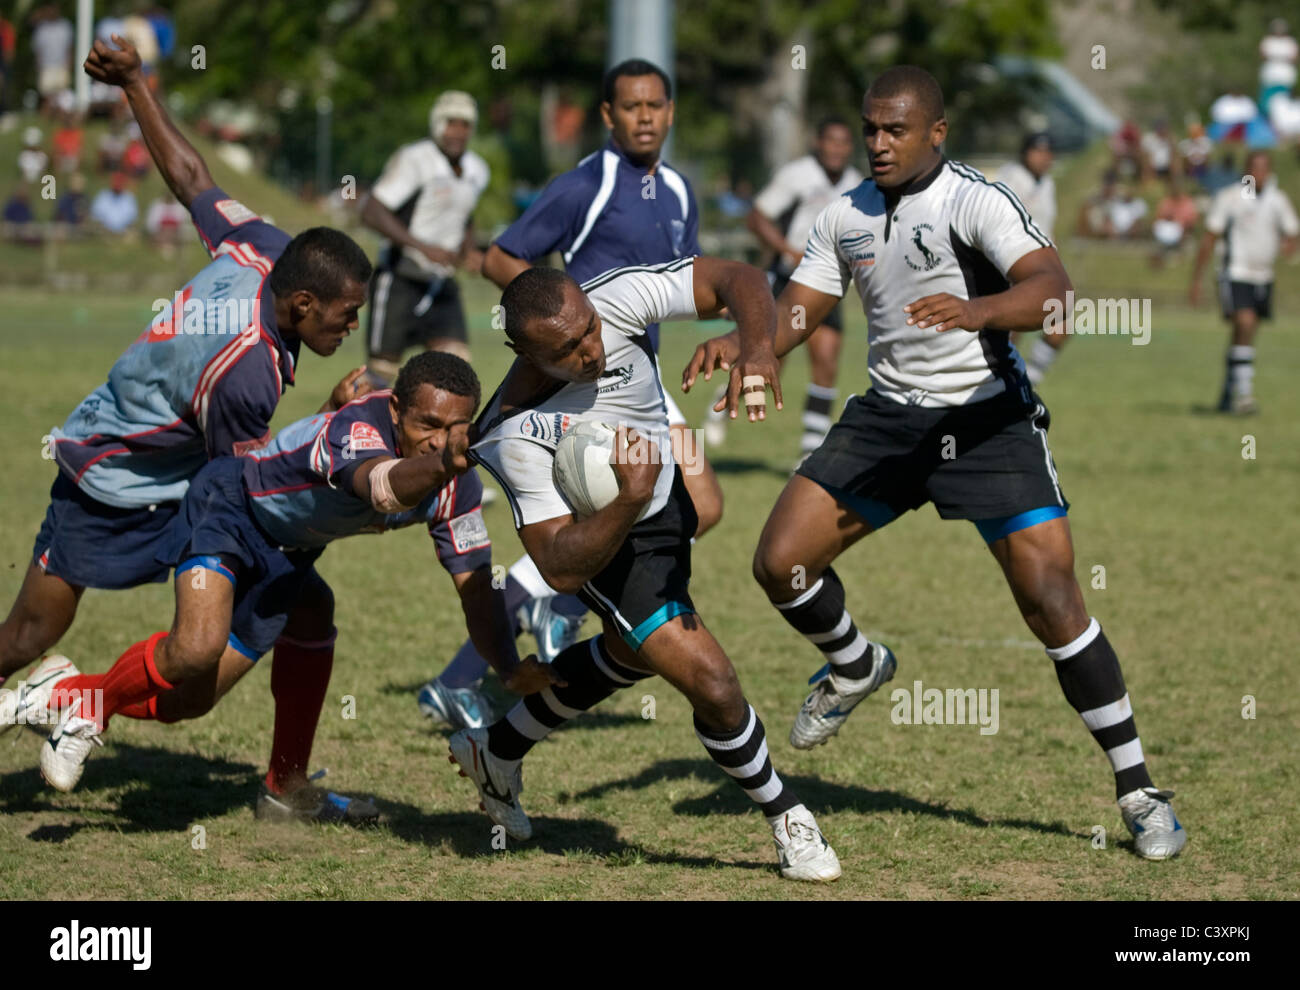 Les hommes jouent dans un match de rugby local. Banque D'Images